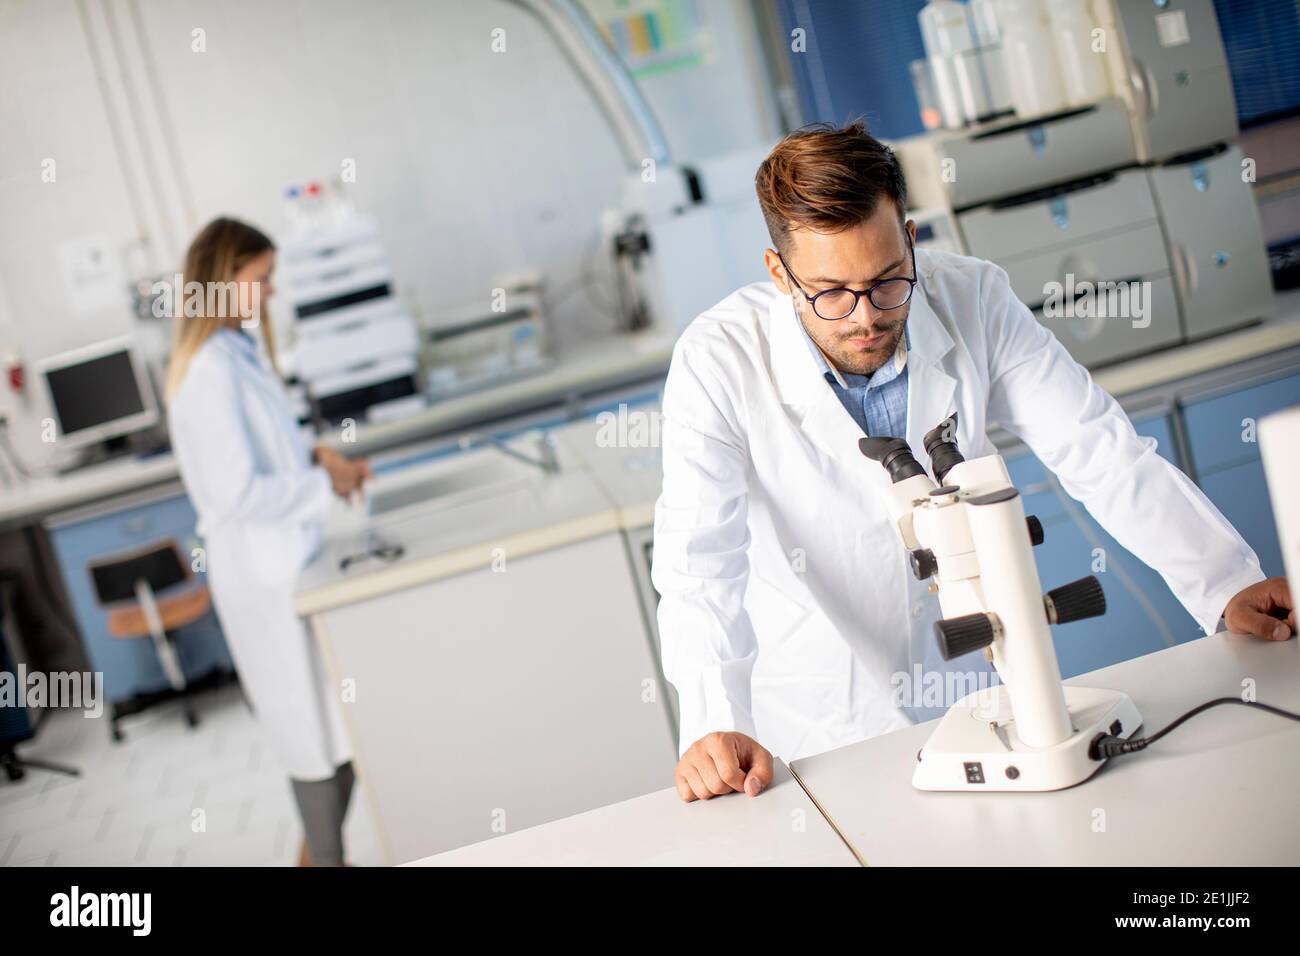 Hübscher junger Wissenschaftler im weißen Laborkittel, der mit binokular arbeitet Mikroskop im Labor der Materialwissenschaft Stockfoto